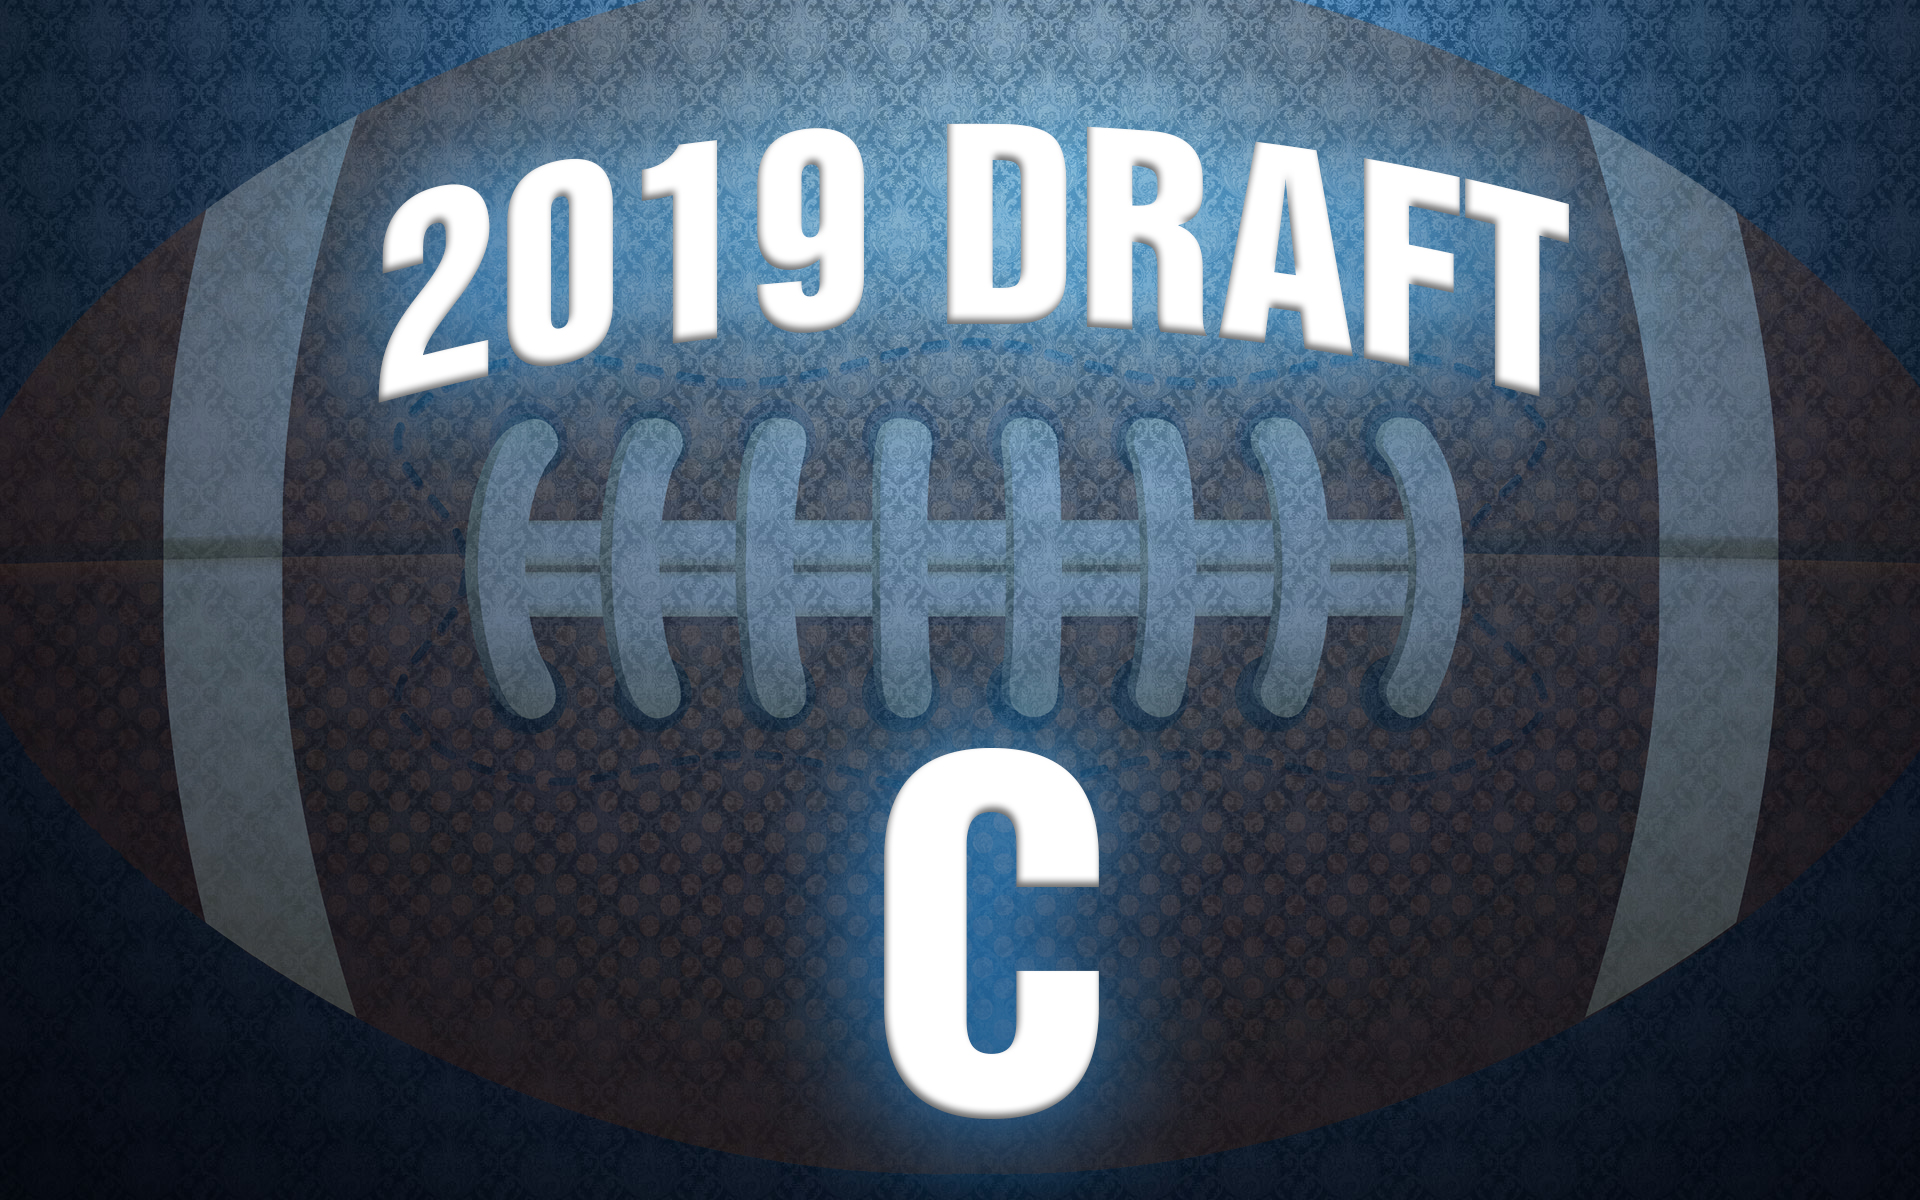 NFL Draft center rankings 2019